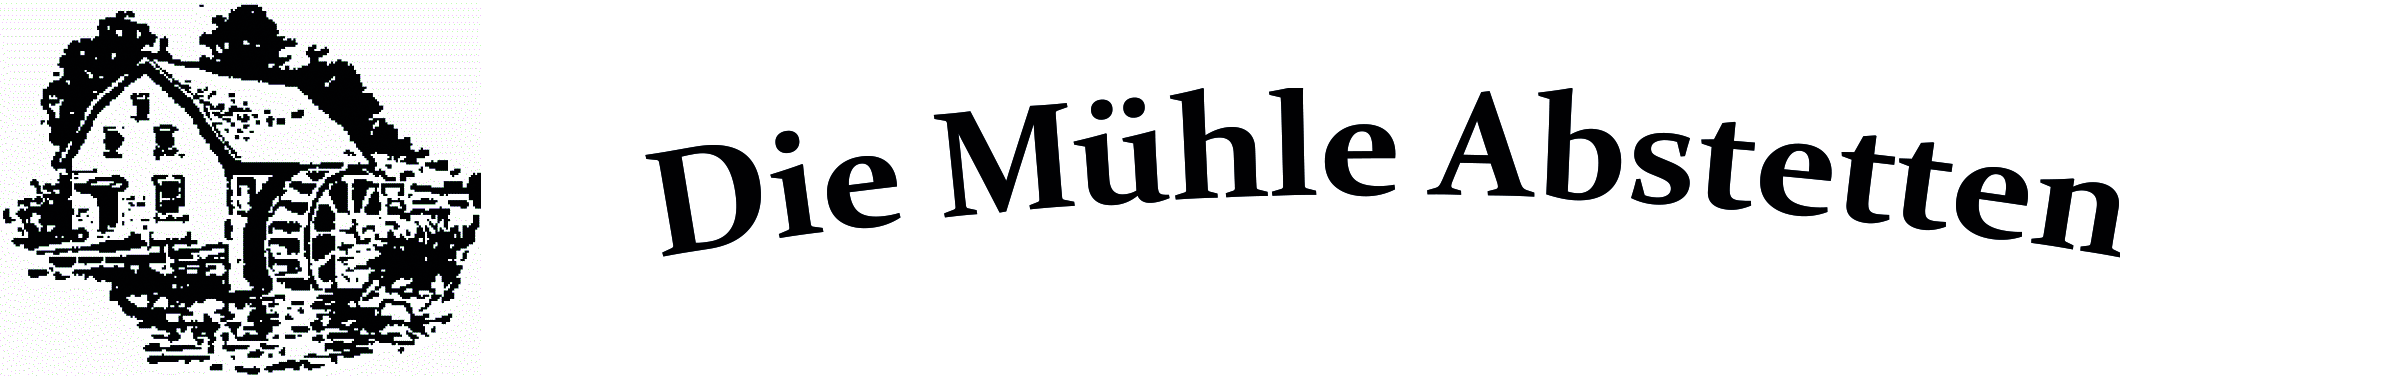 Die Mühle Abstetten logo